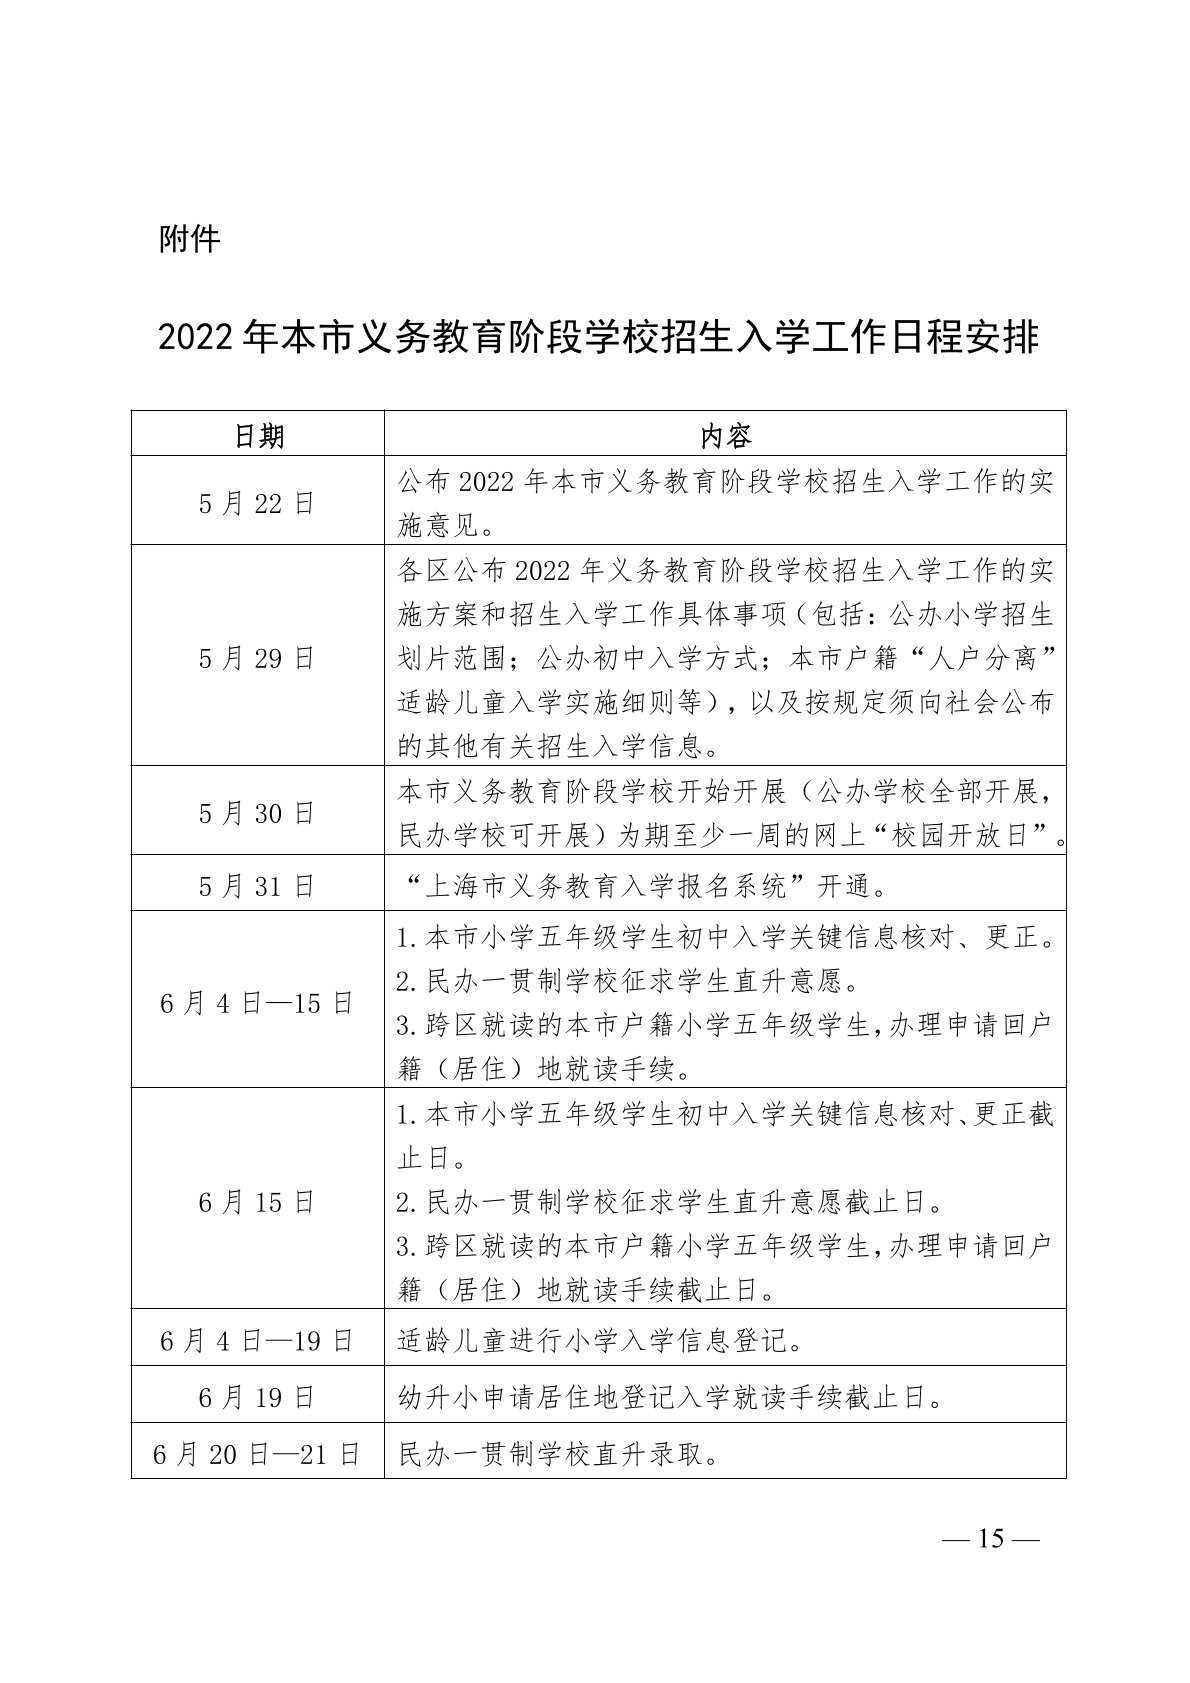 上海市教育委员会关于 2022 年本市义务教育阶段学校招生入学工作的实施意见（沪教委基【2022】11号）